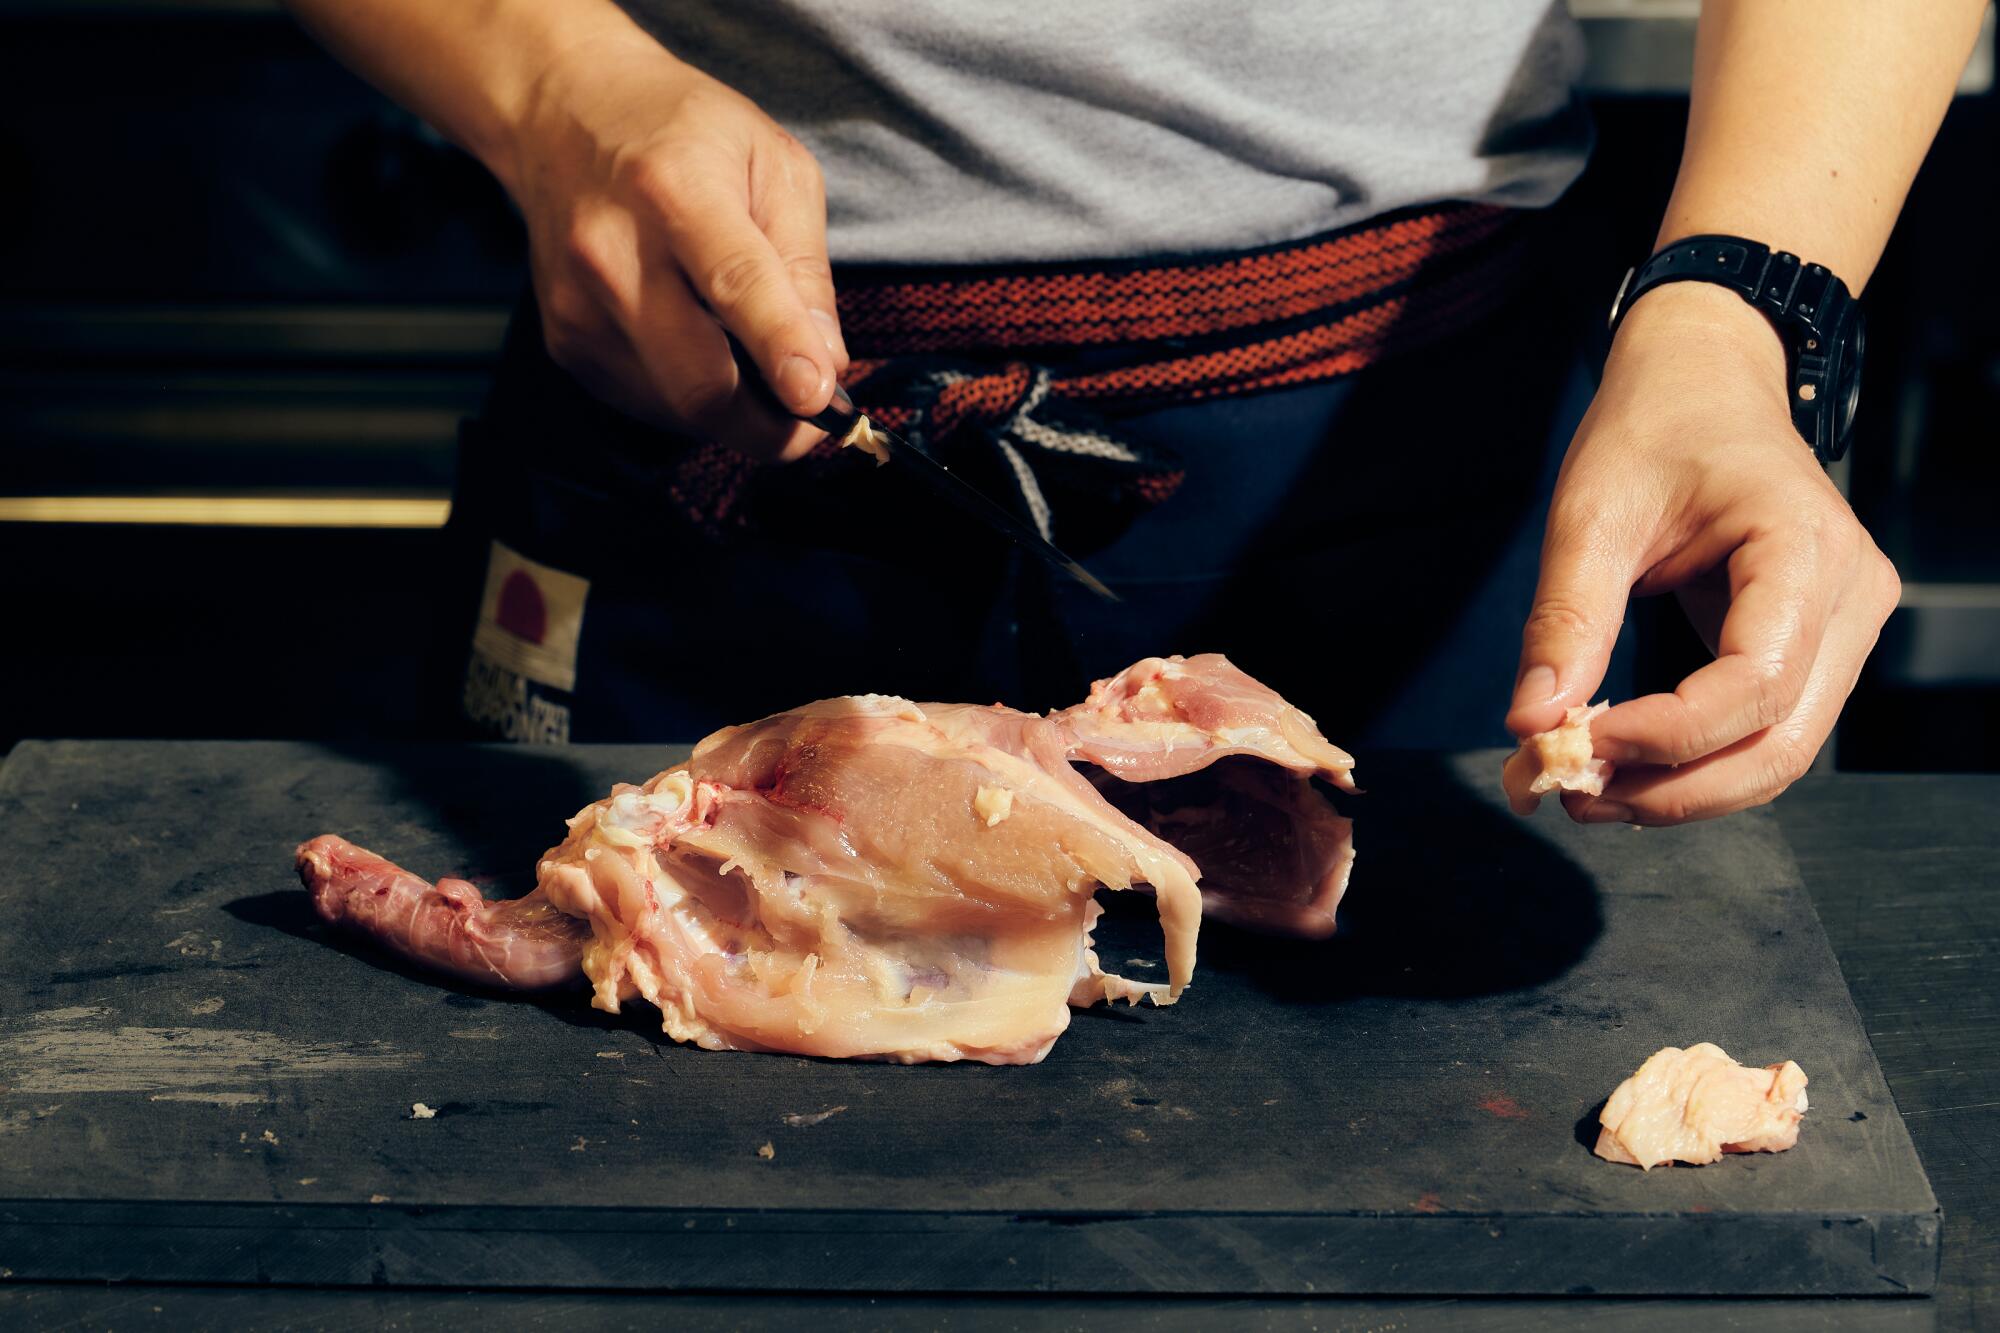 Hands at work cutting raw chicken.